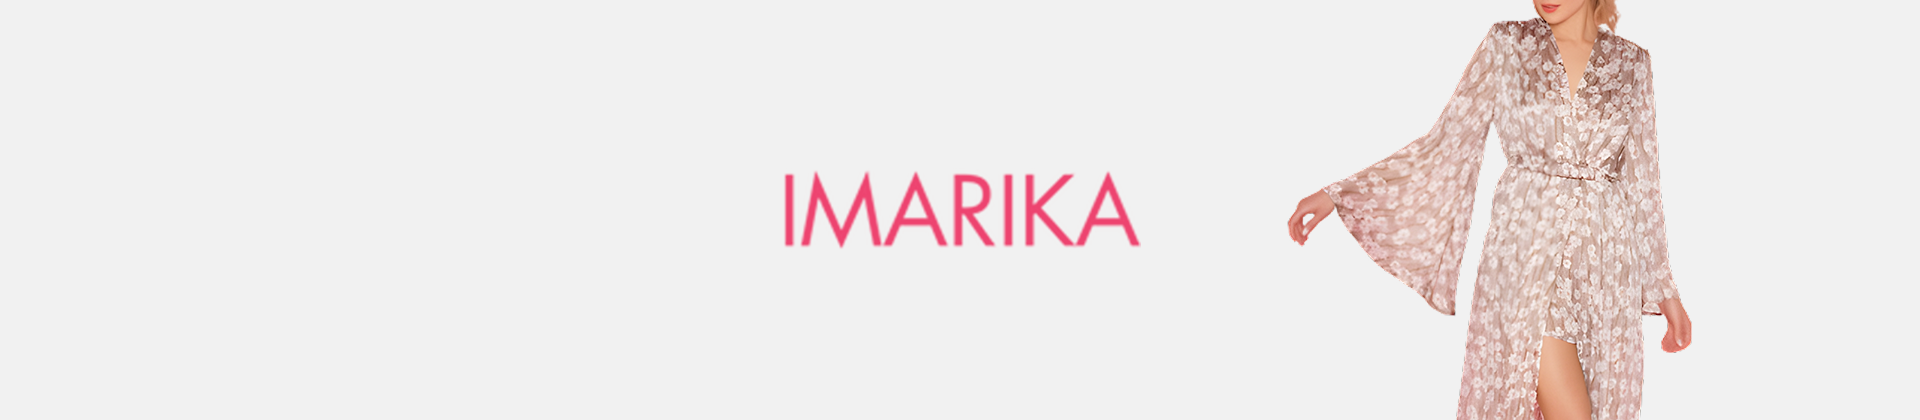 Marika Milano vendita scarpe on line!